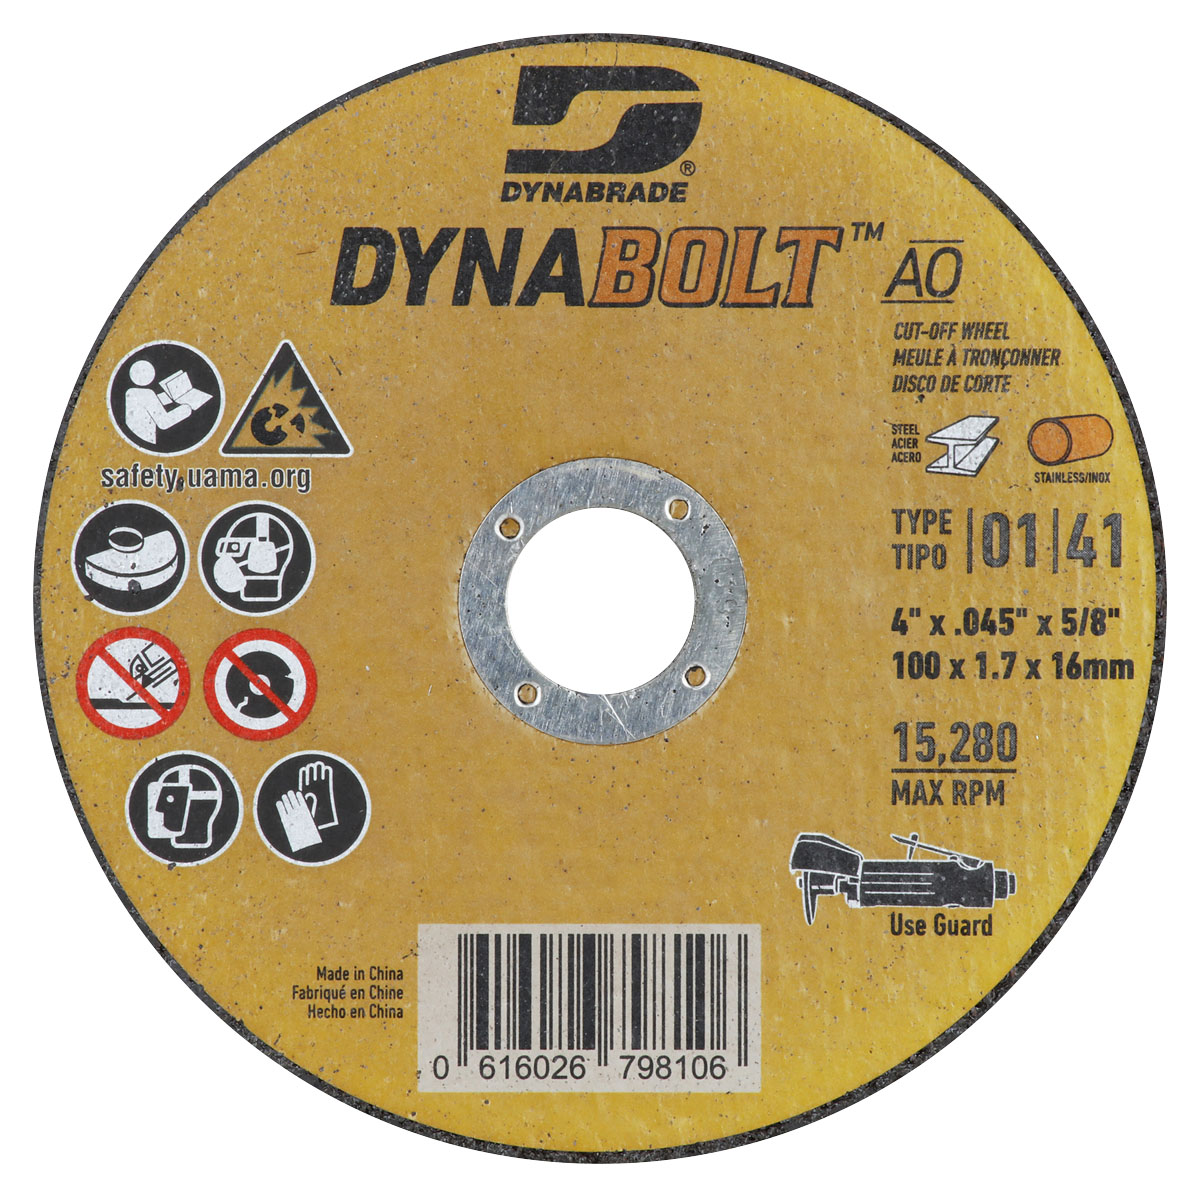 DynaBolt AO 4" x .045" x 5/8" T1/41 Right Angle